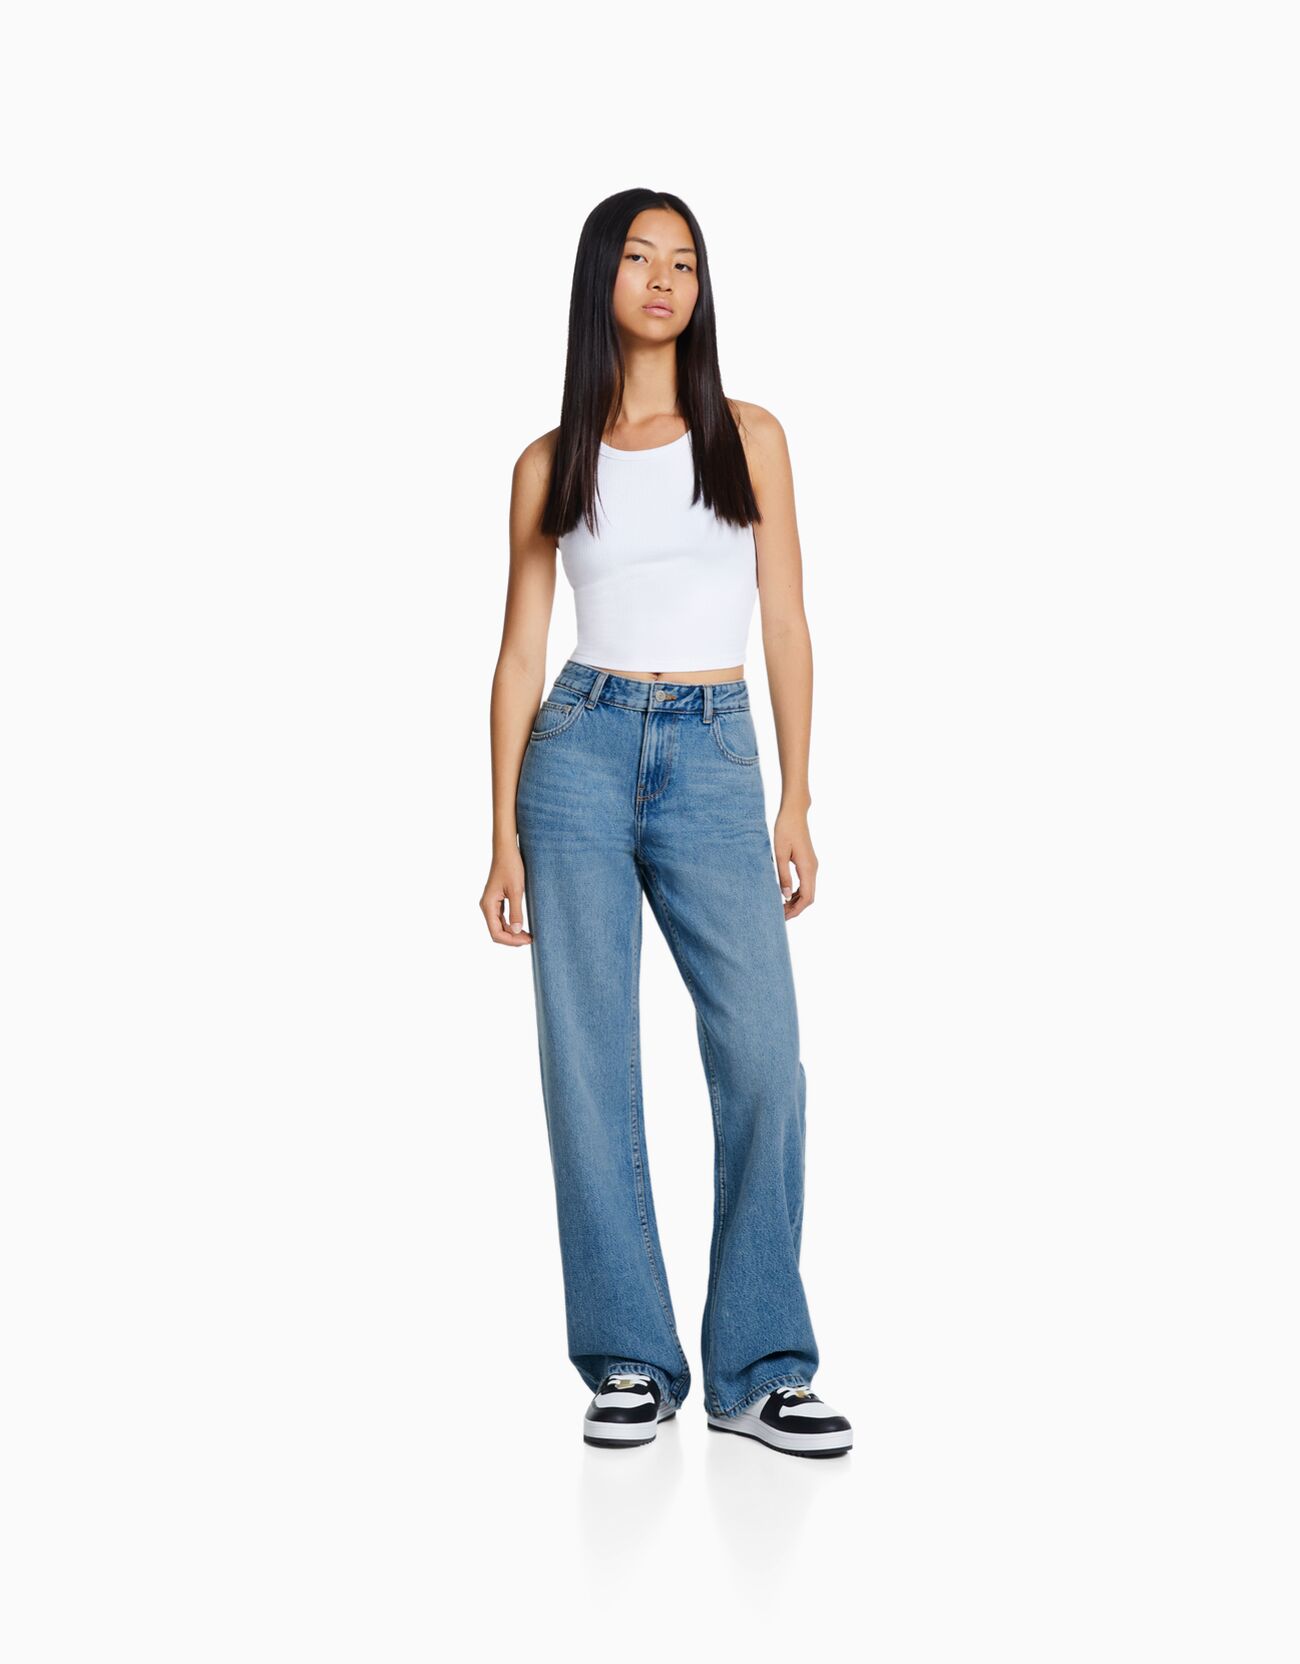 Wide-leg cropped jeans - Trousers - BSK Teen